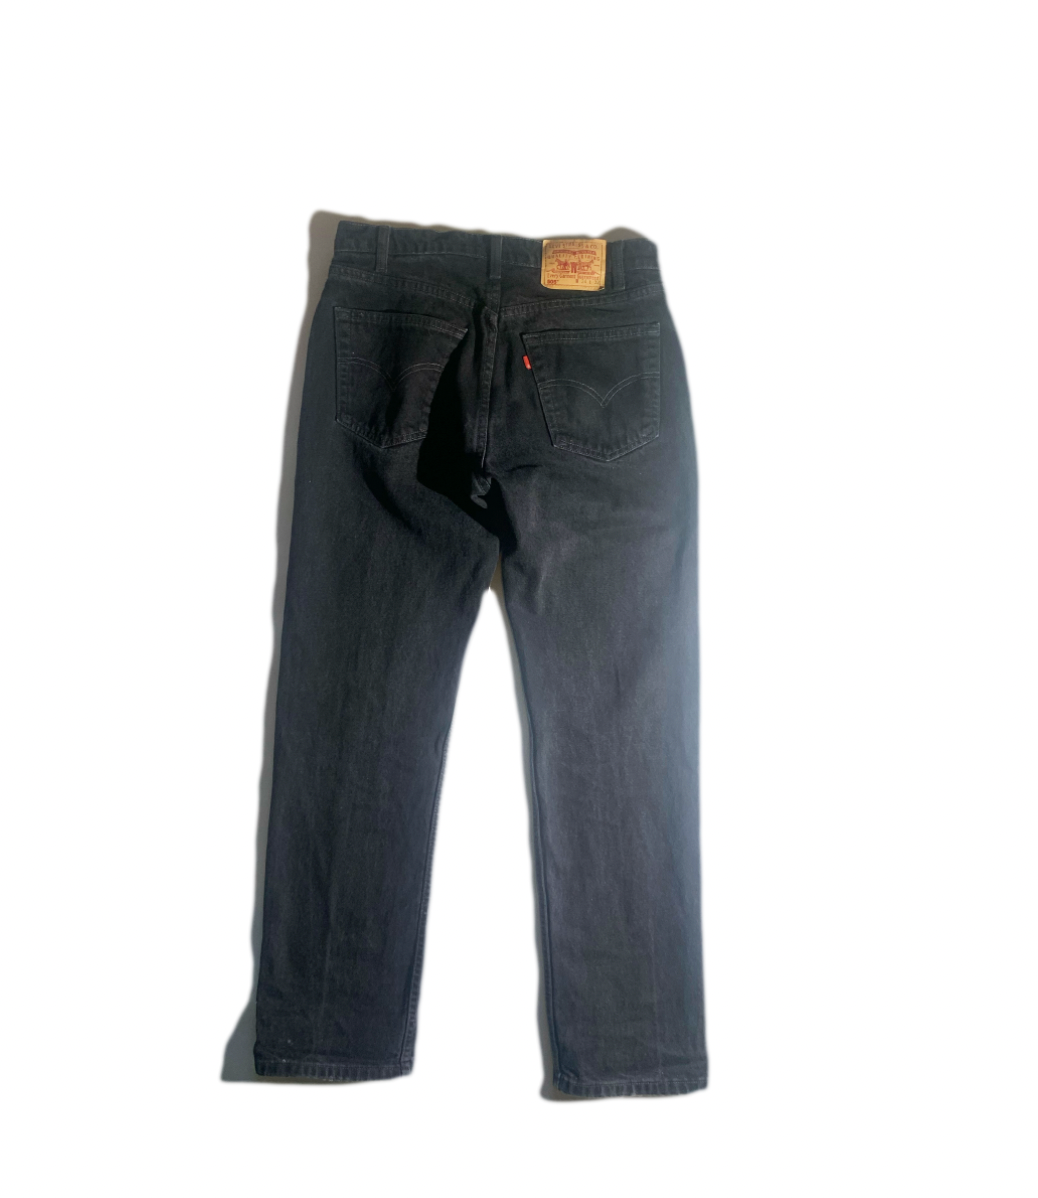 Vintage Levis Jeans Pants 505